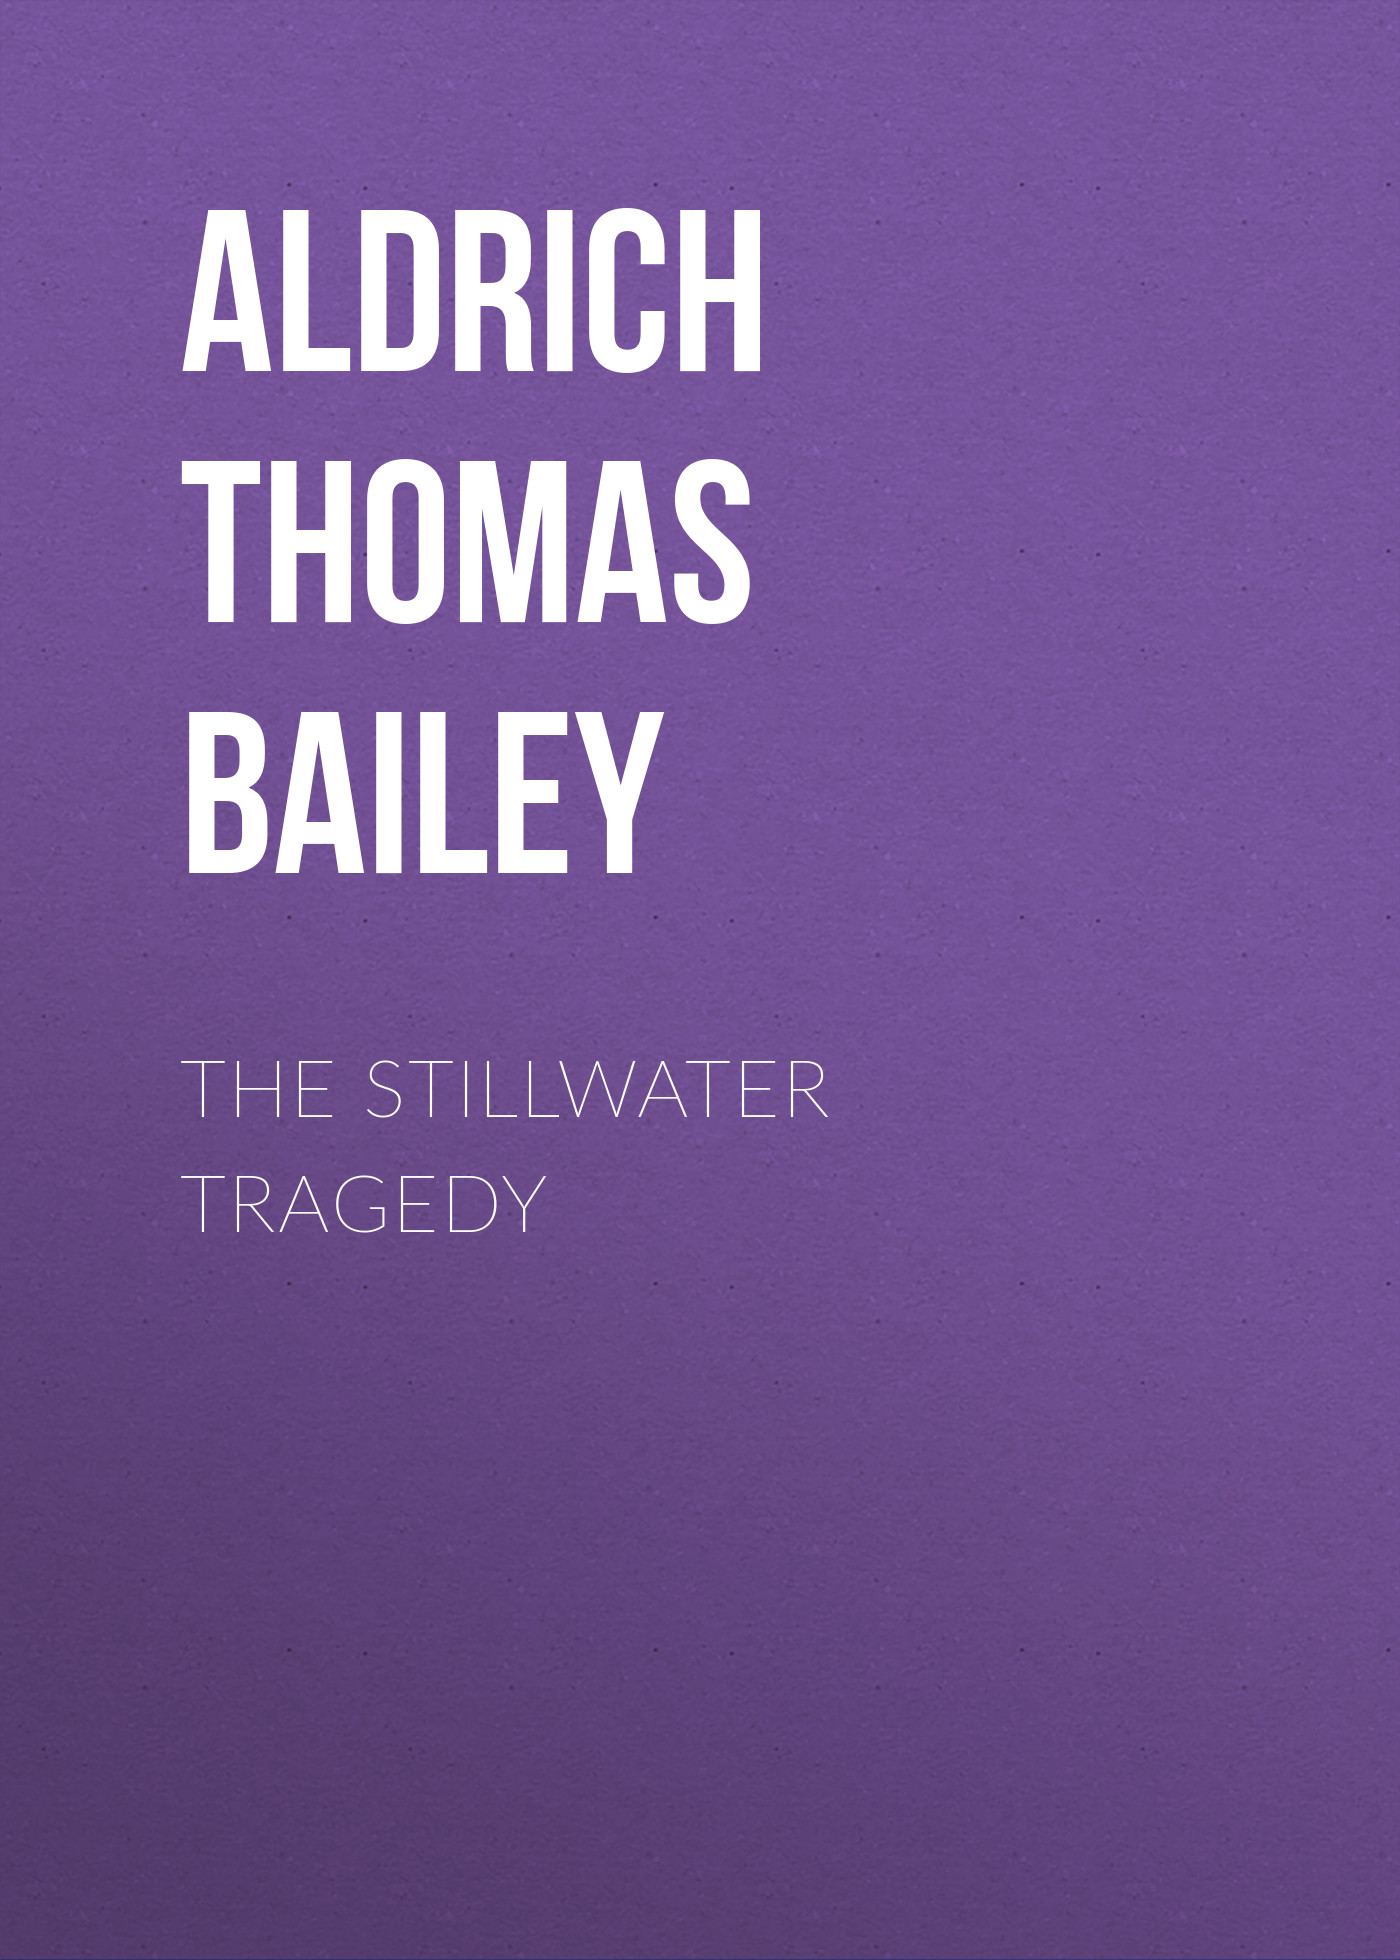 Книга The Stillwater Tragedy из серии , созданная Thomas Aldrich, может относится к жанру Зарубежная классика, Литература 19 века, Зарубежная старинная литература. Стоимость электронной книги The Stillwater Tragedy с идентификатором 36364854 составляет 0 руб.